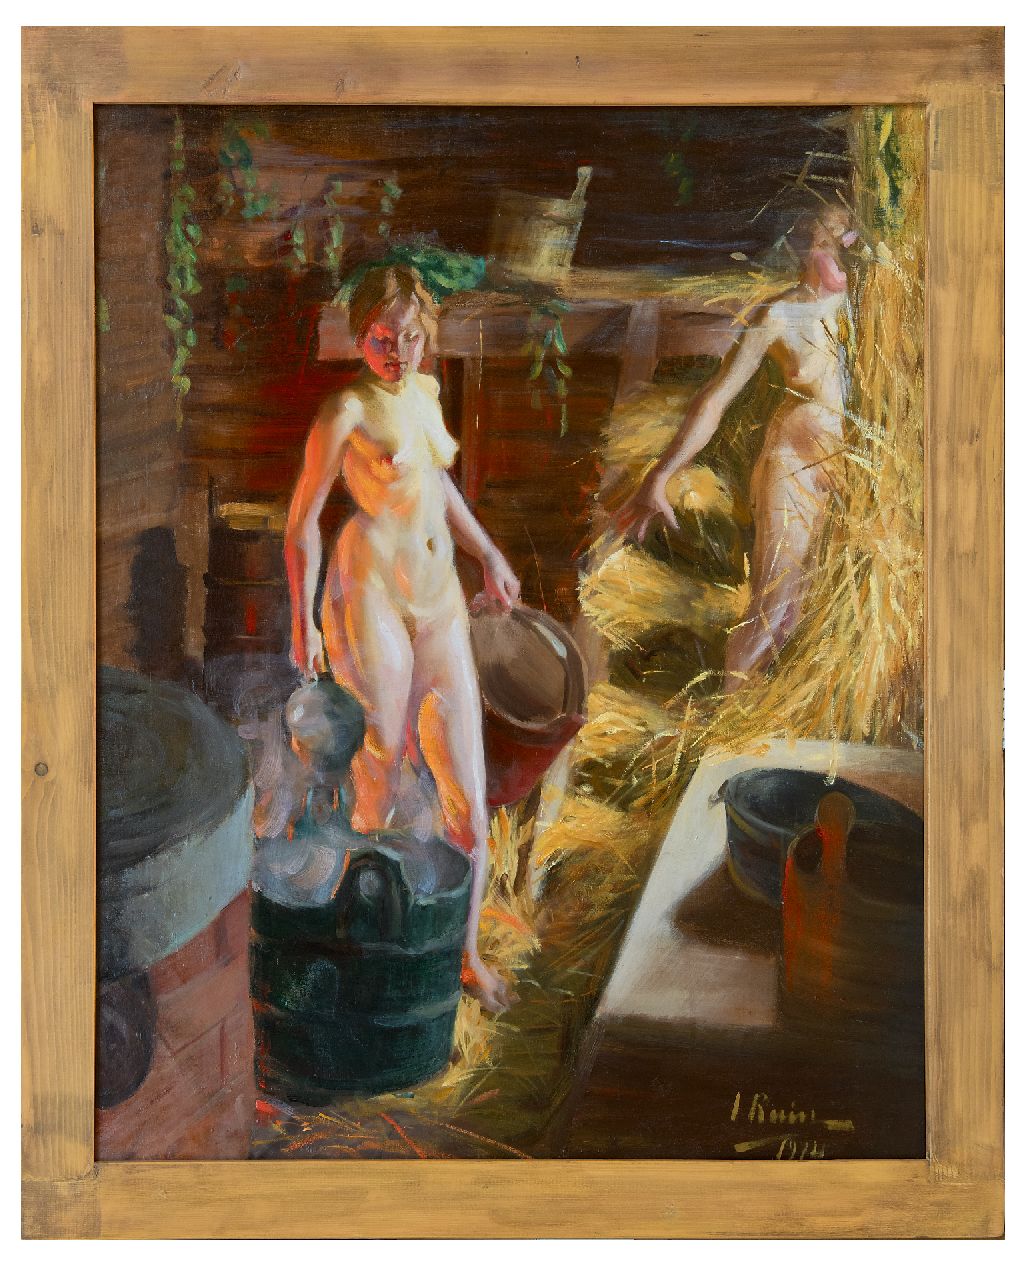 Ruin I.L.  | Ingrid Linnea Ruin | Schilderijen te koop aangeboden | Twee meisjes in de sauna, olieverf op doek 92,3 x 76,3 cm, gesigneerd rechtsonder en gedateerd 1914